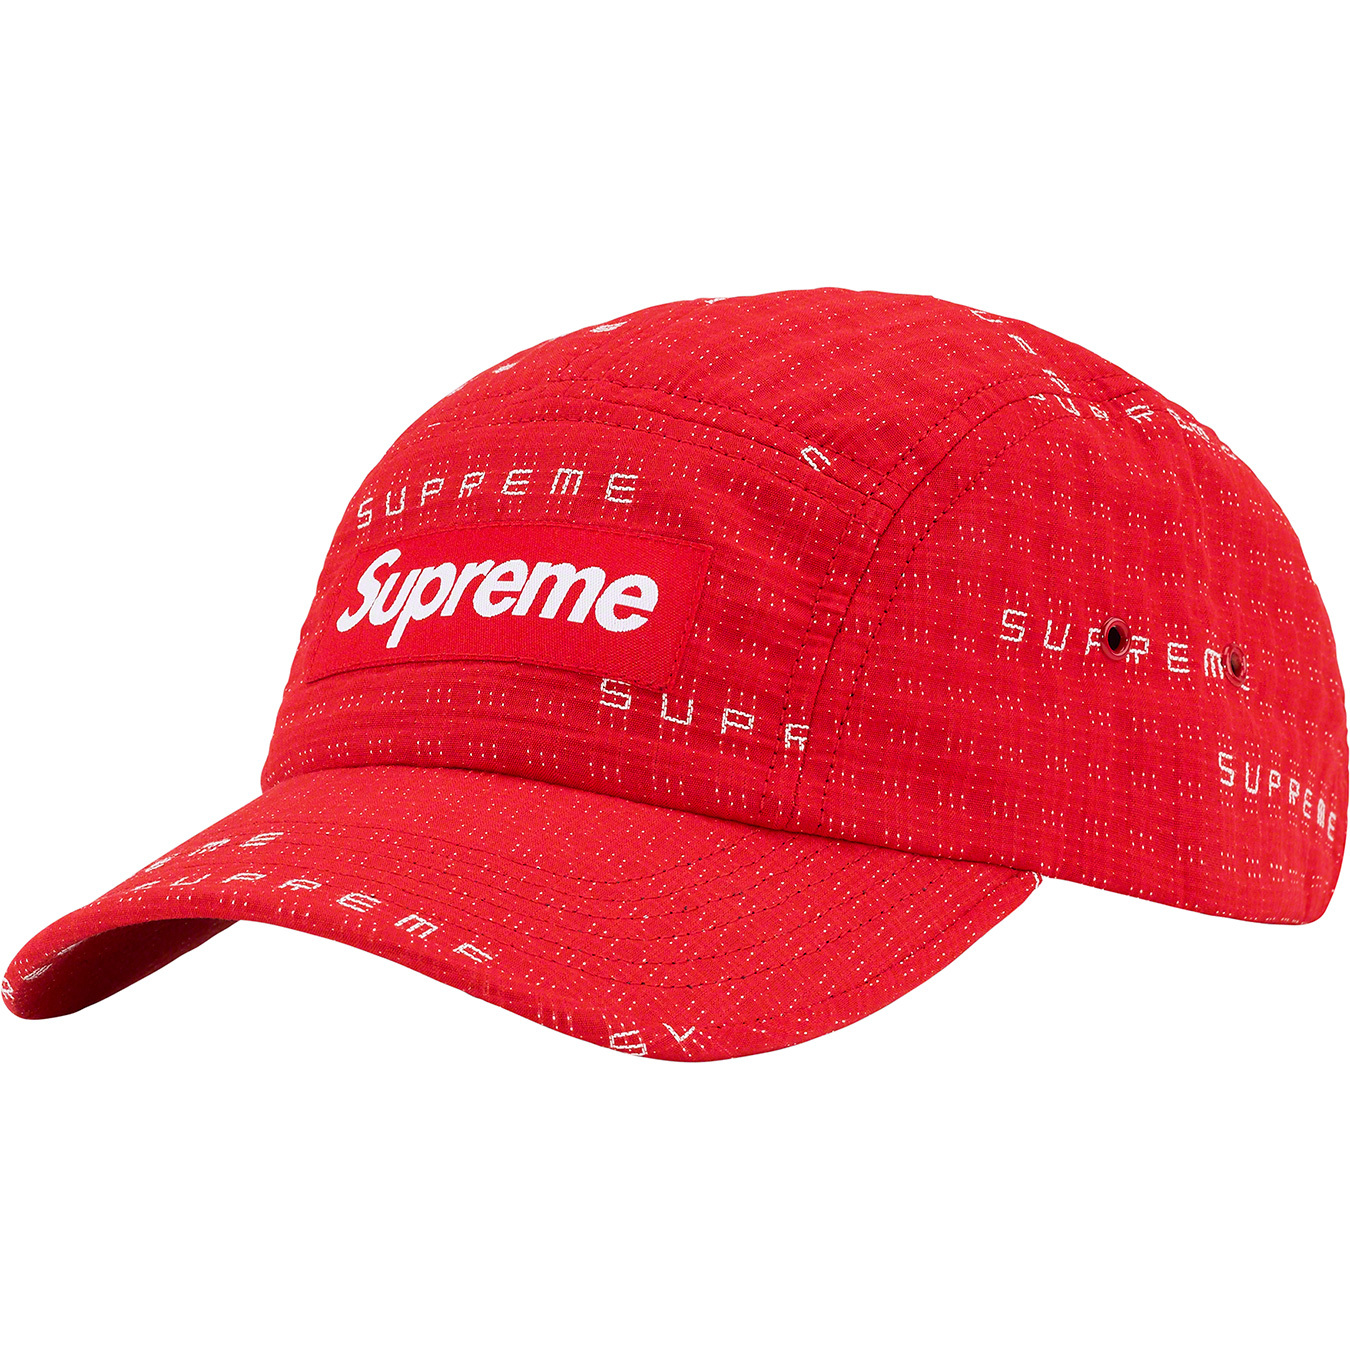 Supreme Logo Stripe Jacquard Denim Camp cap Black